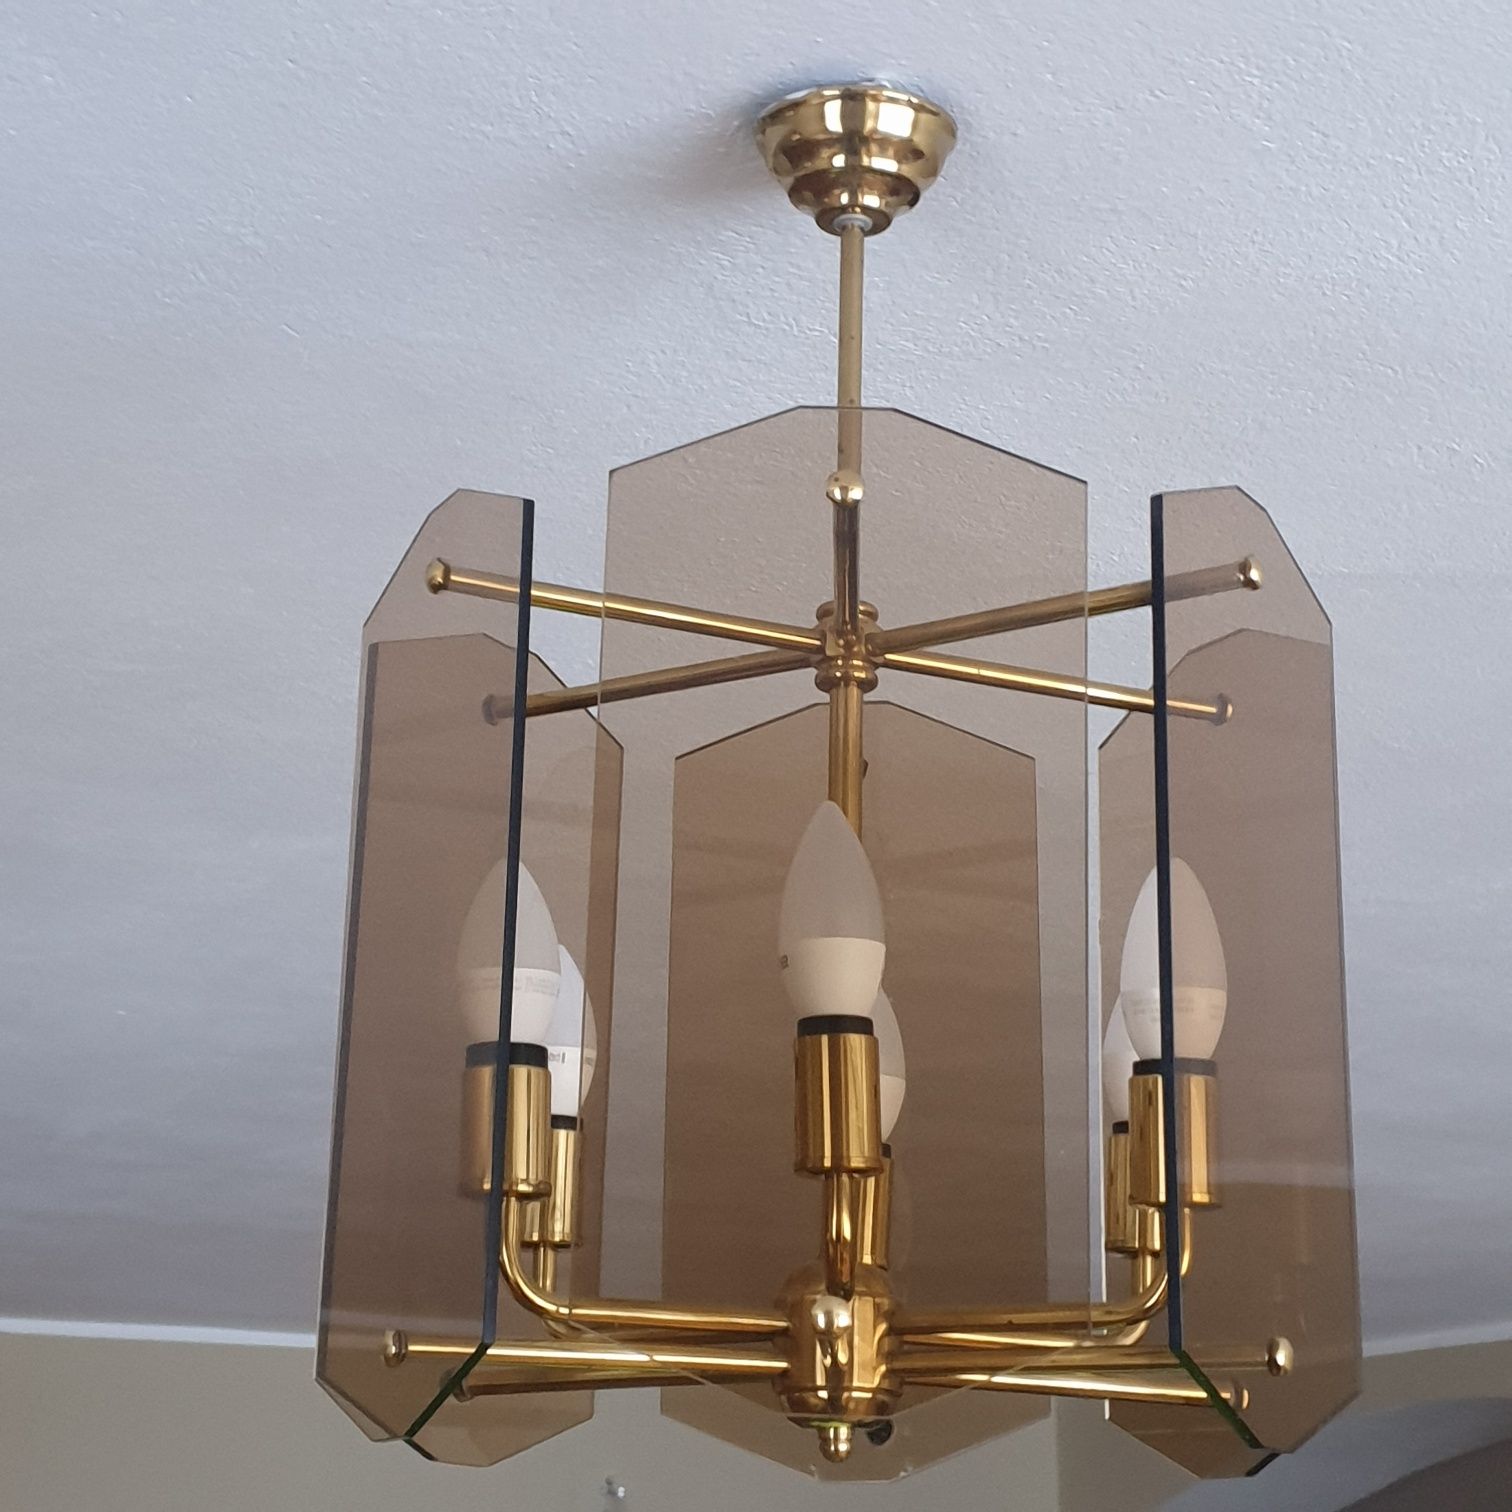 Żyrandol Lampa sufitowa szklana Salon klasyczne wzornictwo